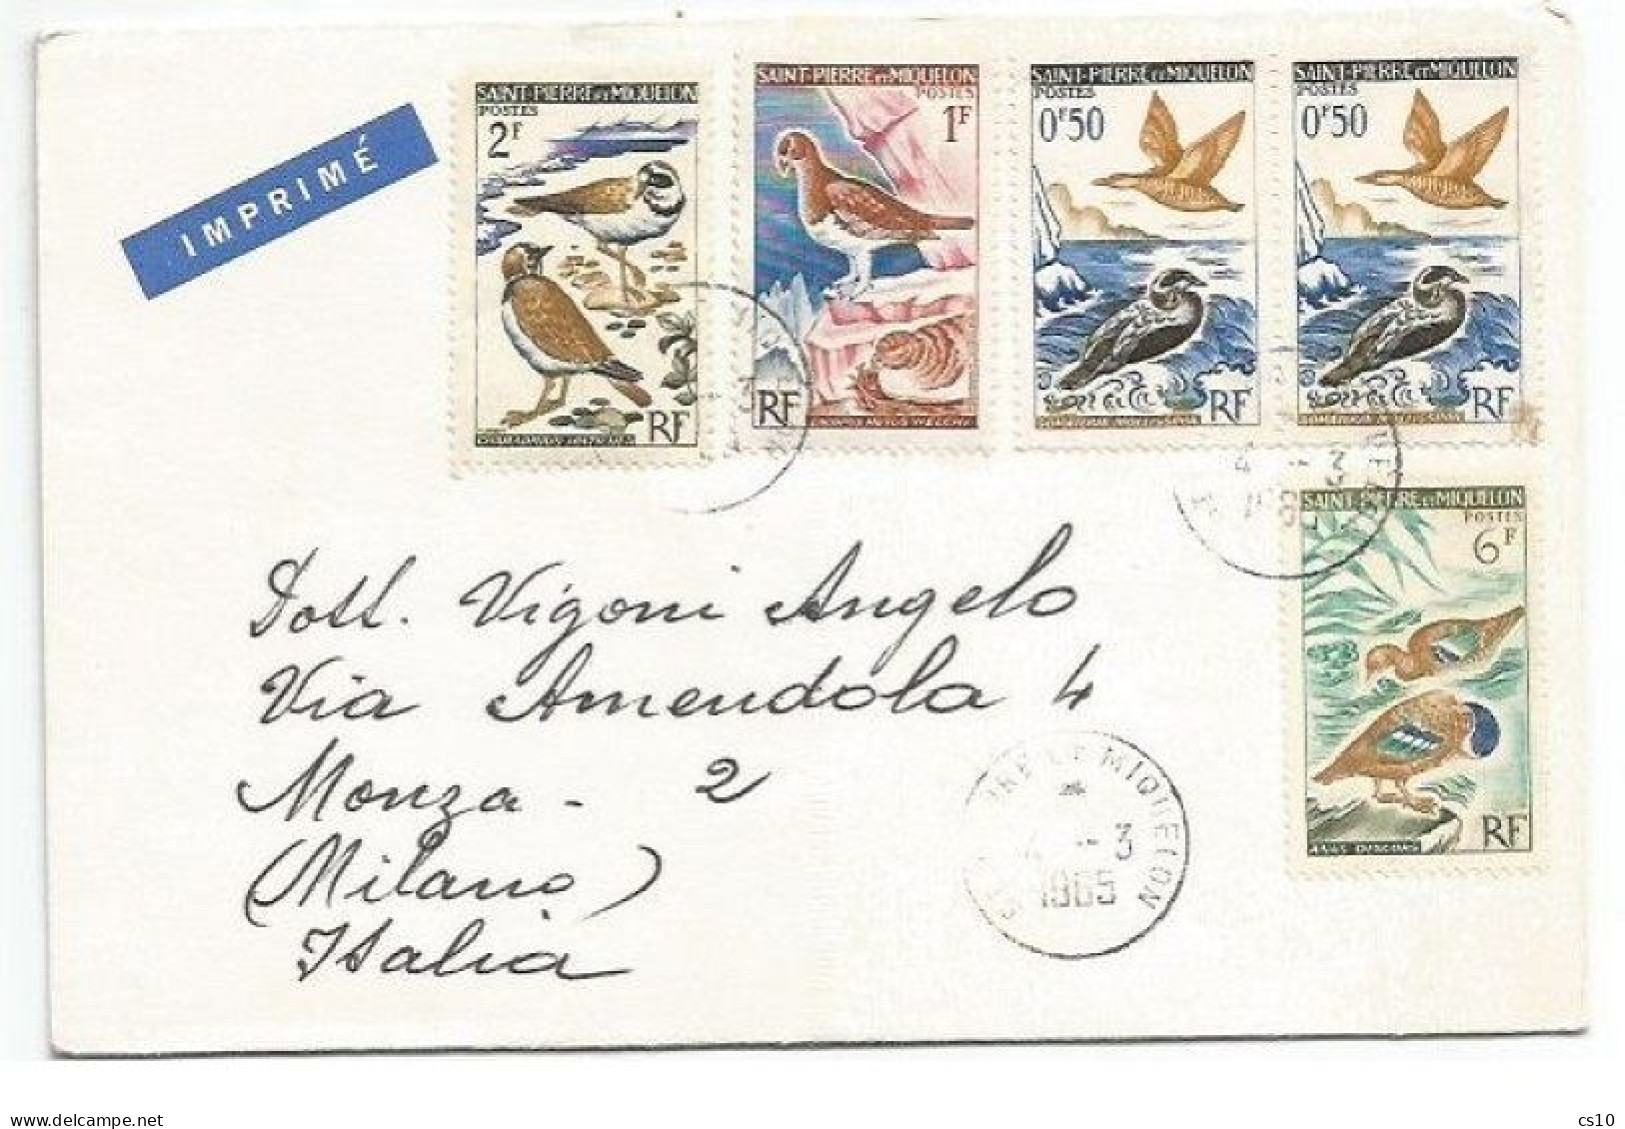 Saint Pierre Miquelon Imprimé Abbott Eritromicina Dear Doctor 4mar1965 X Italie - Publicité